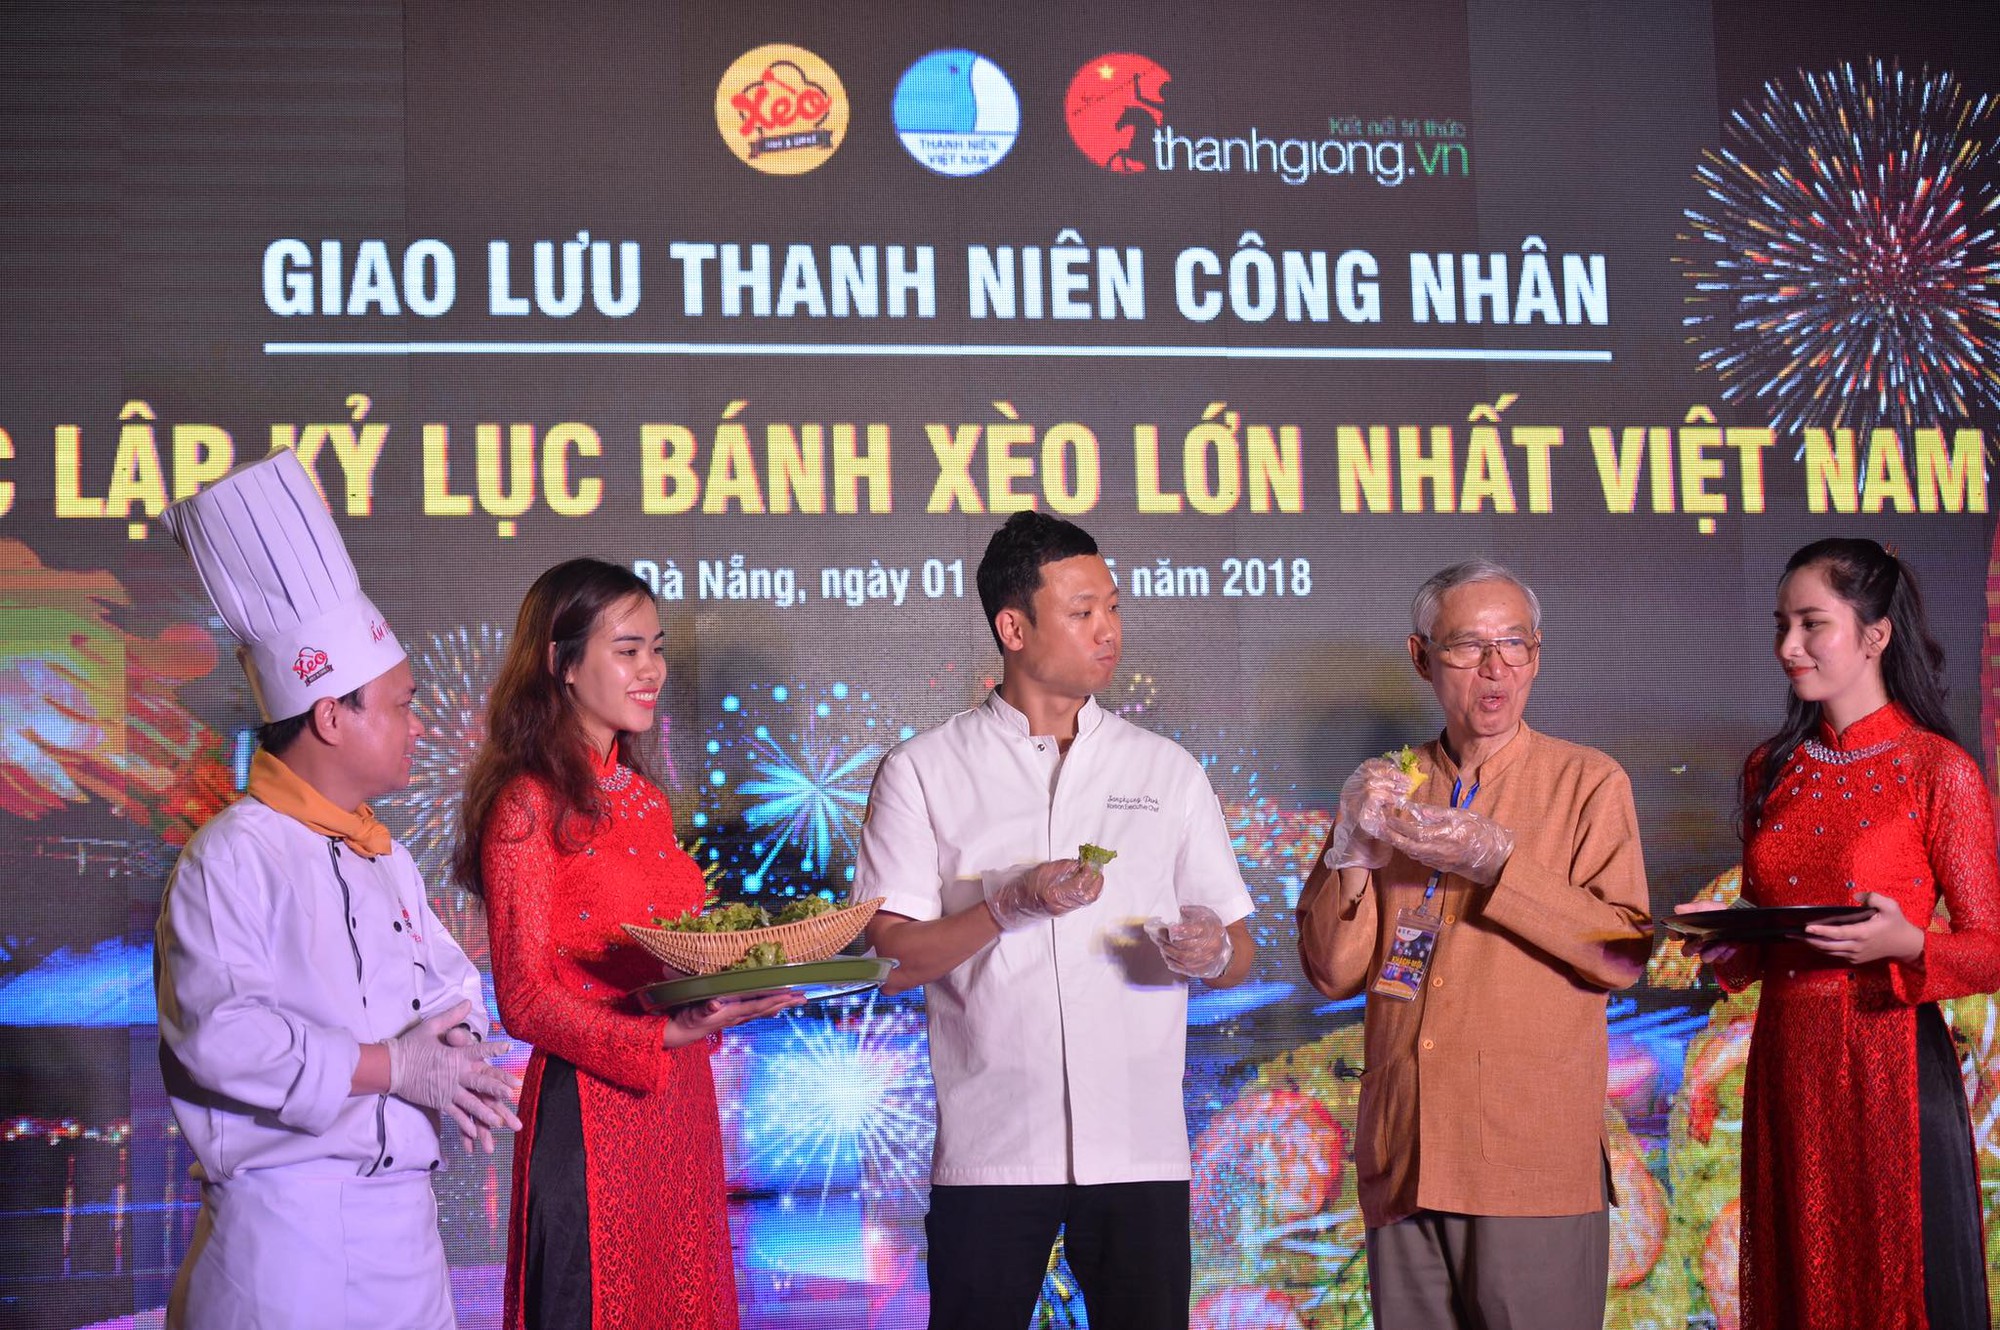 Chiêm ngưỡng chiếc bánh xèo lớn nhất Việt Nam với 100 con tôm hùm - Ảnh 8.